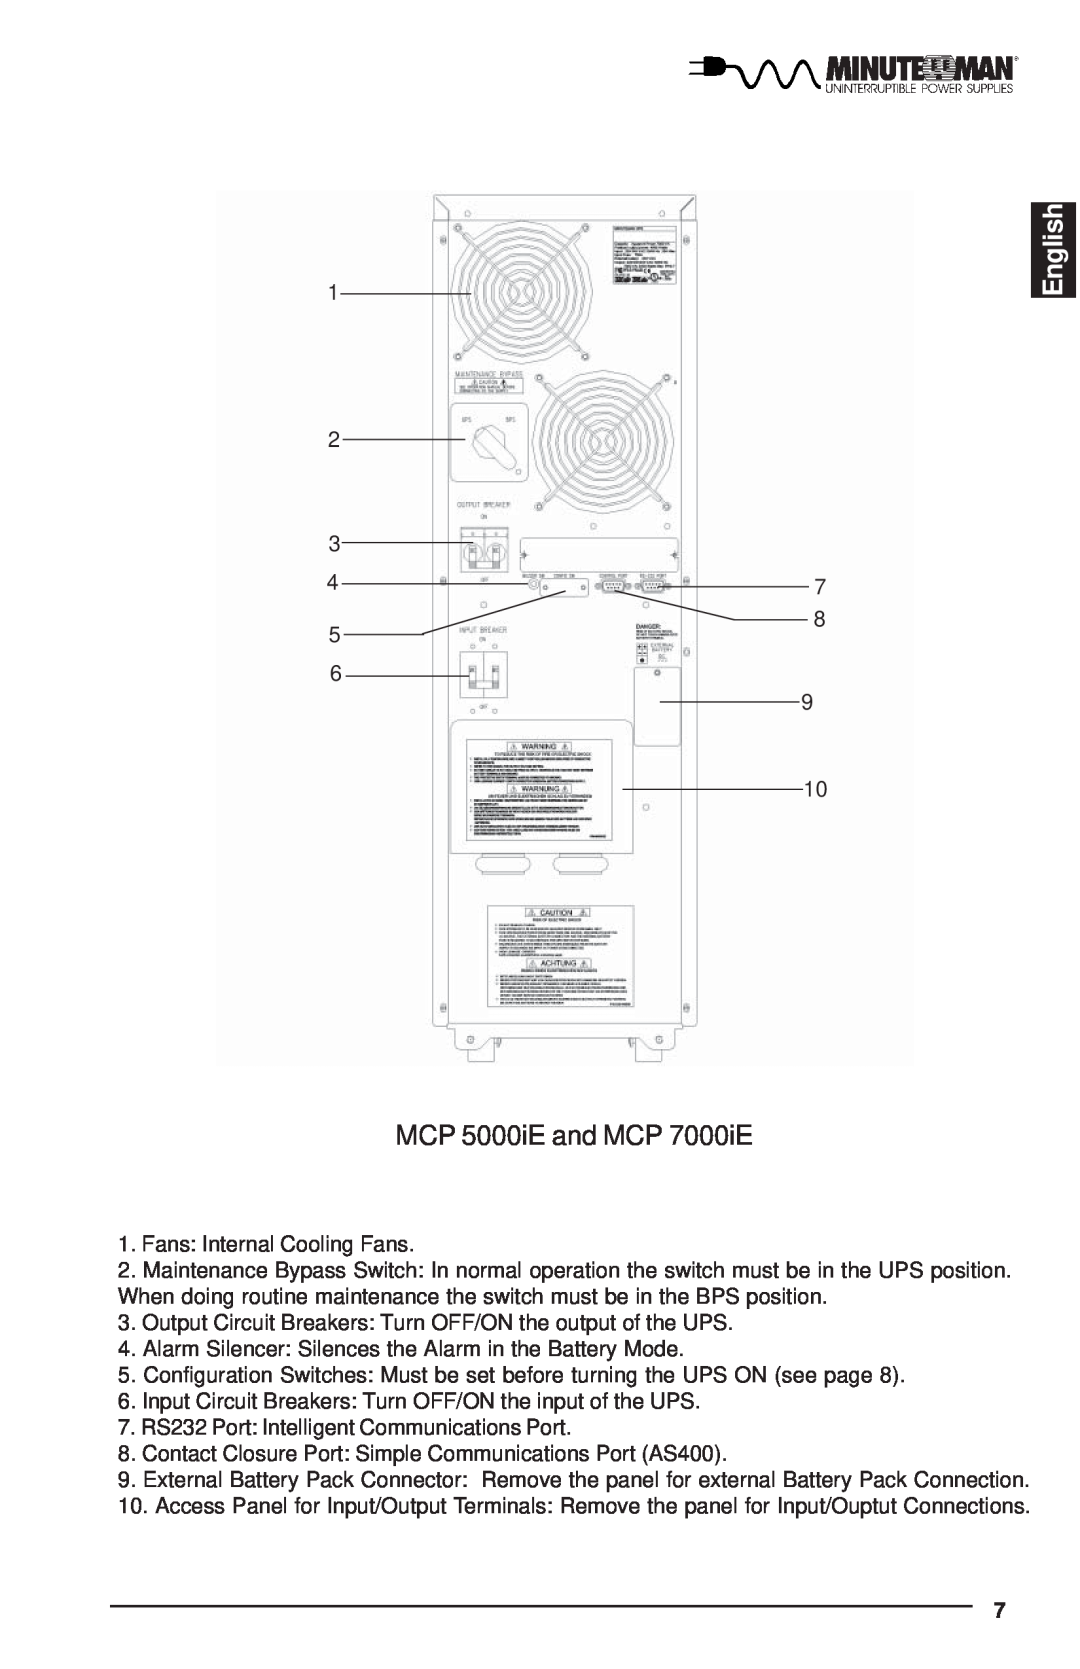 Minuteman UPS MCP-E user manual English, MCP 5000iE and MCP 7000iE 